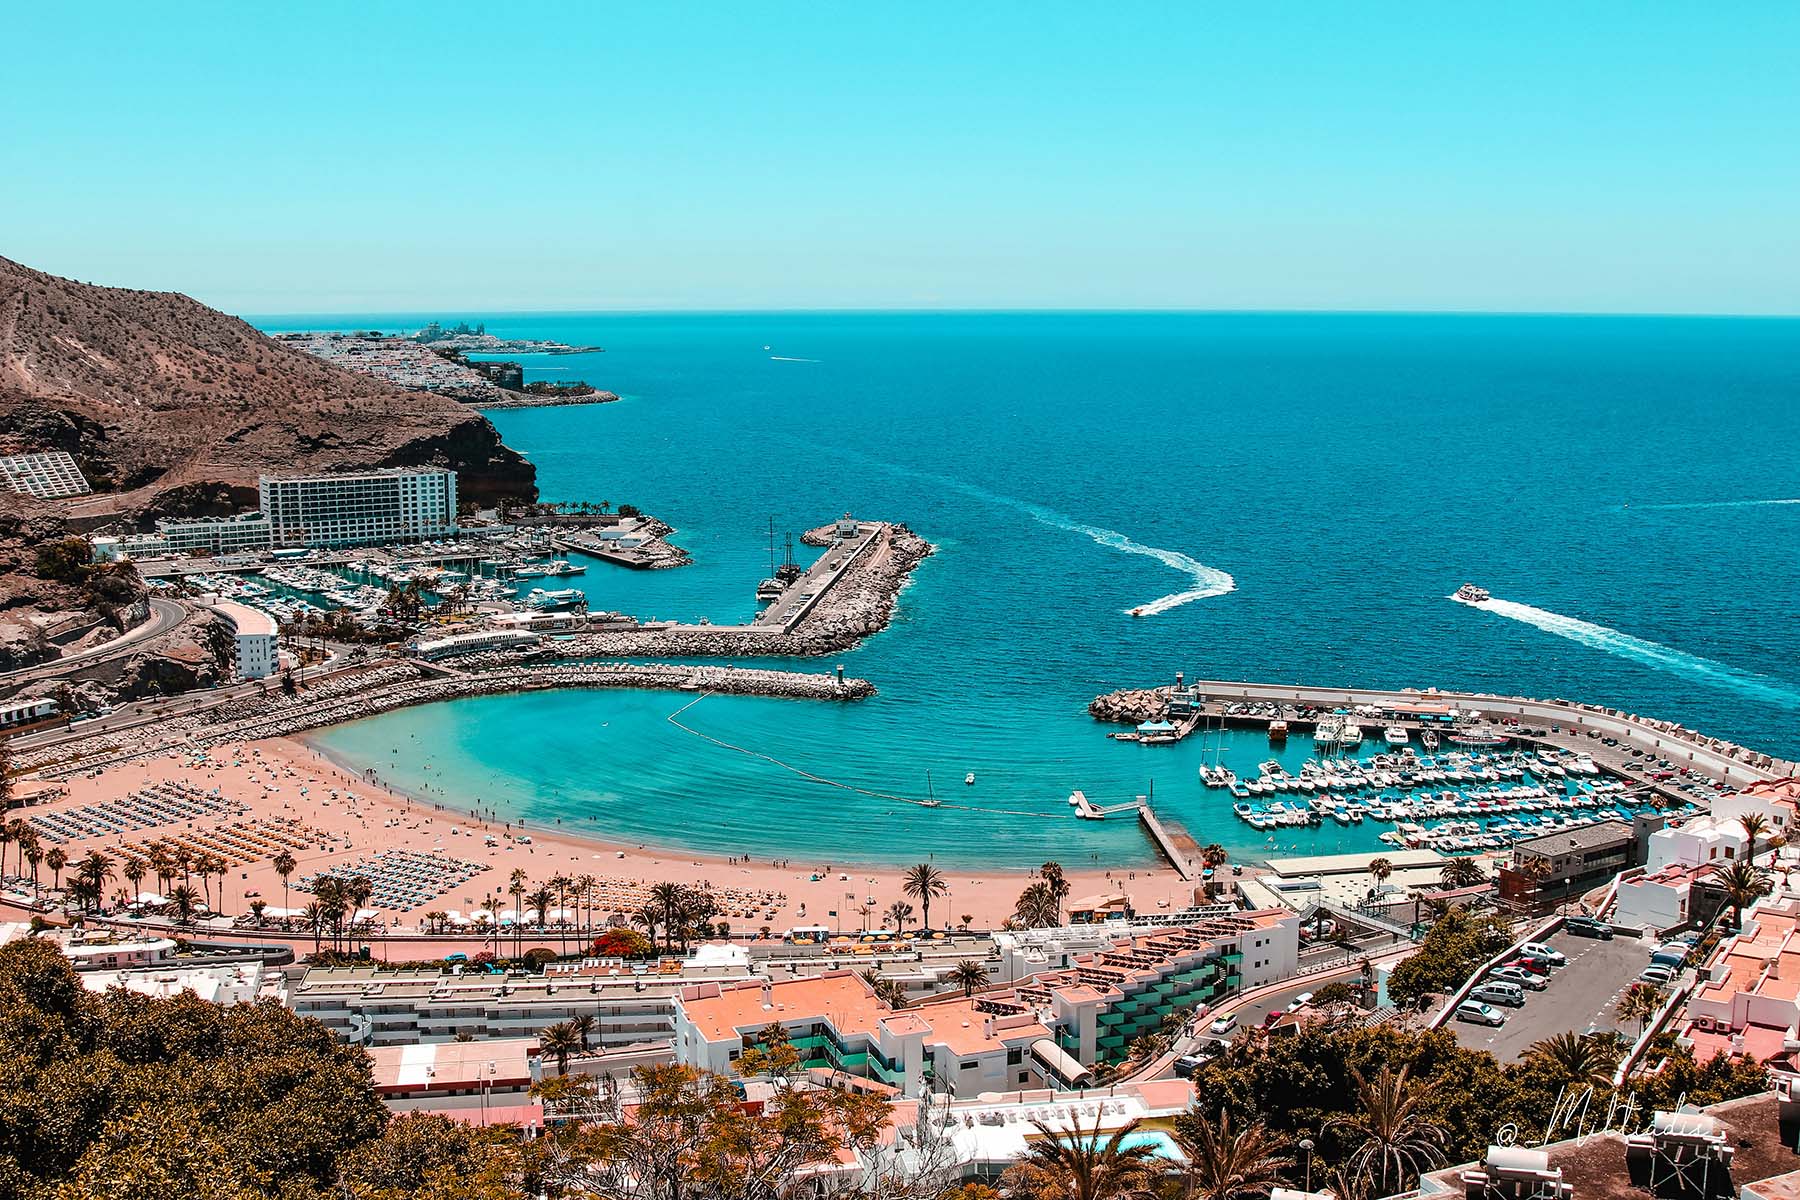 Aerial view of Puerto Rico de Gran Canaria resort area. 